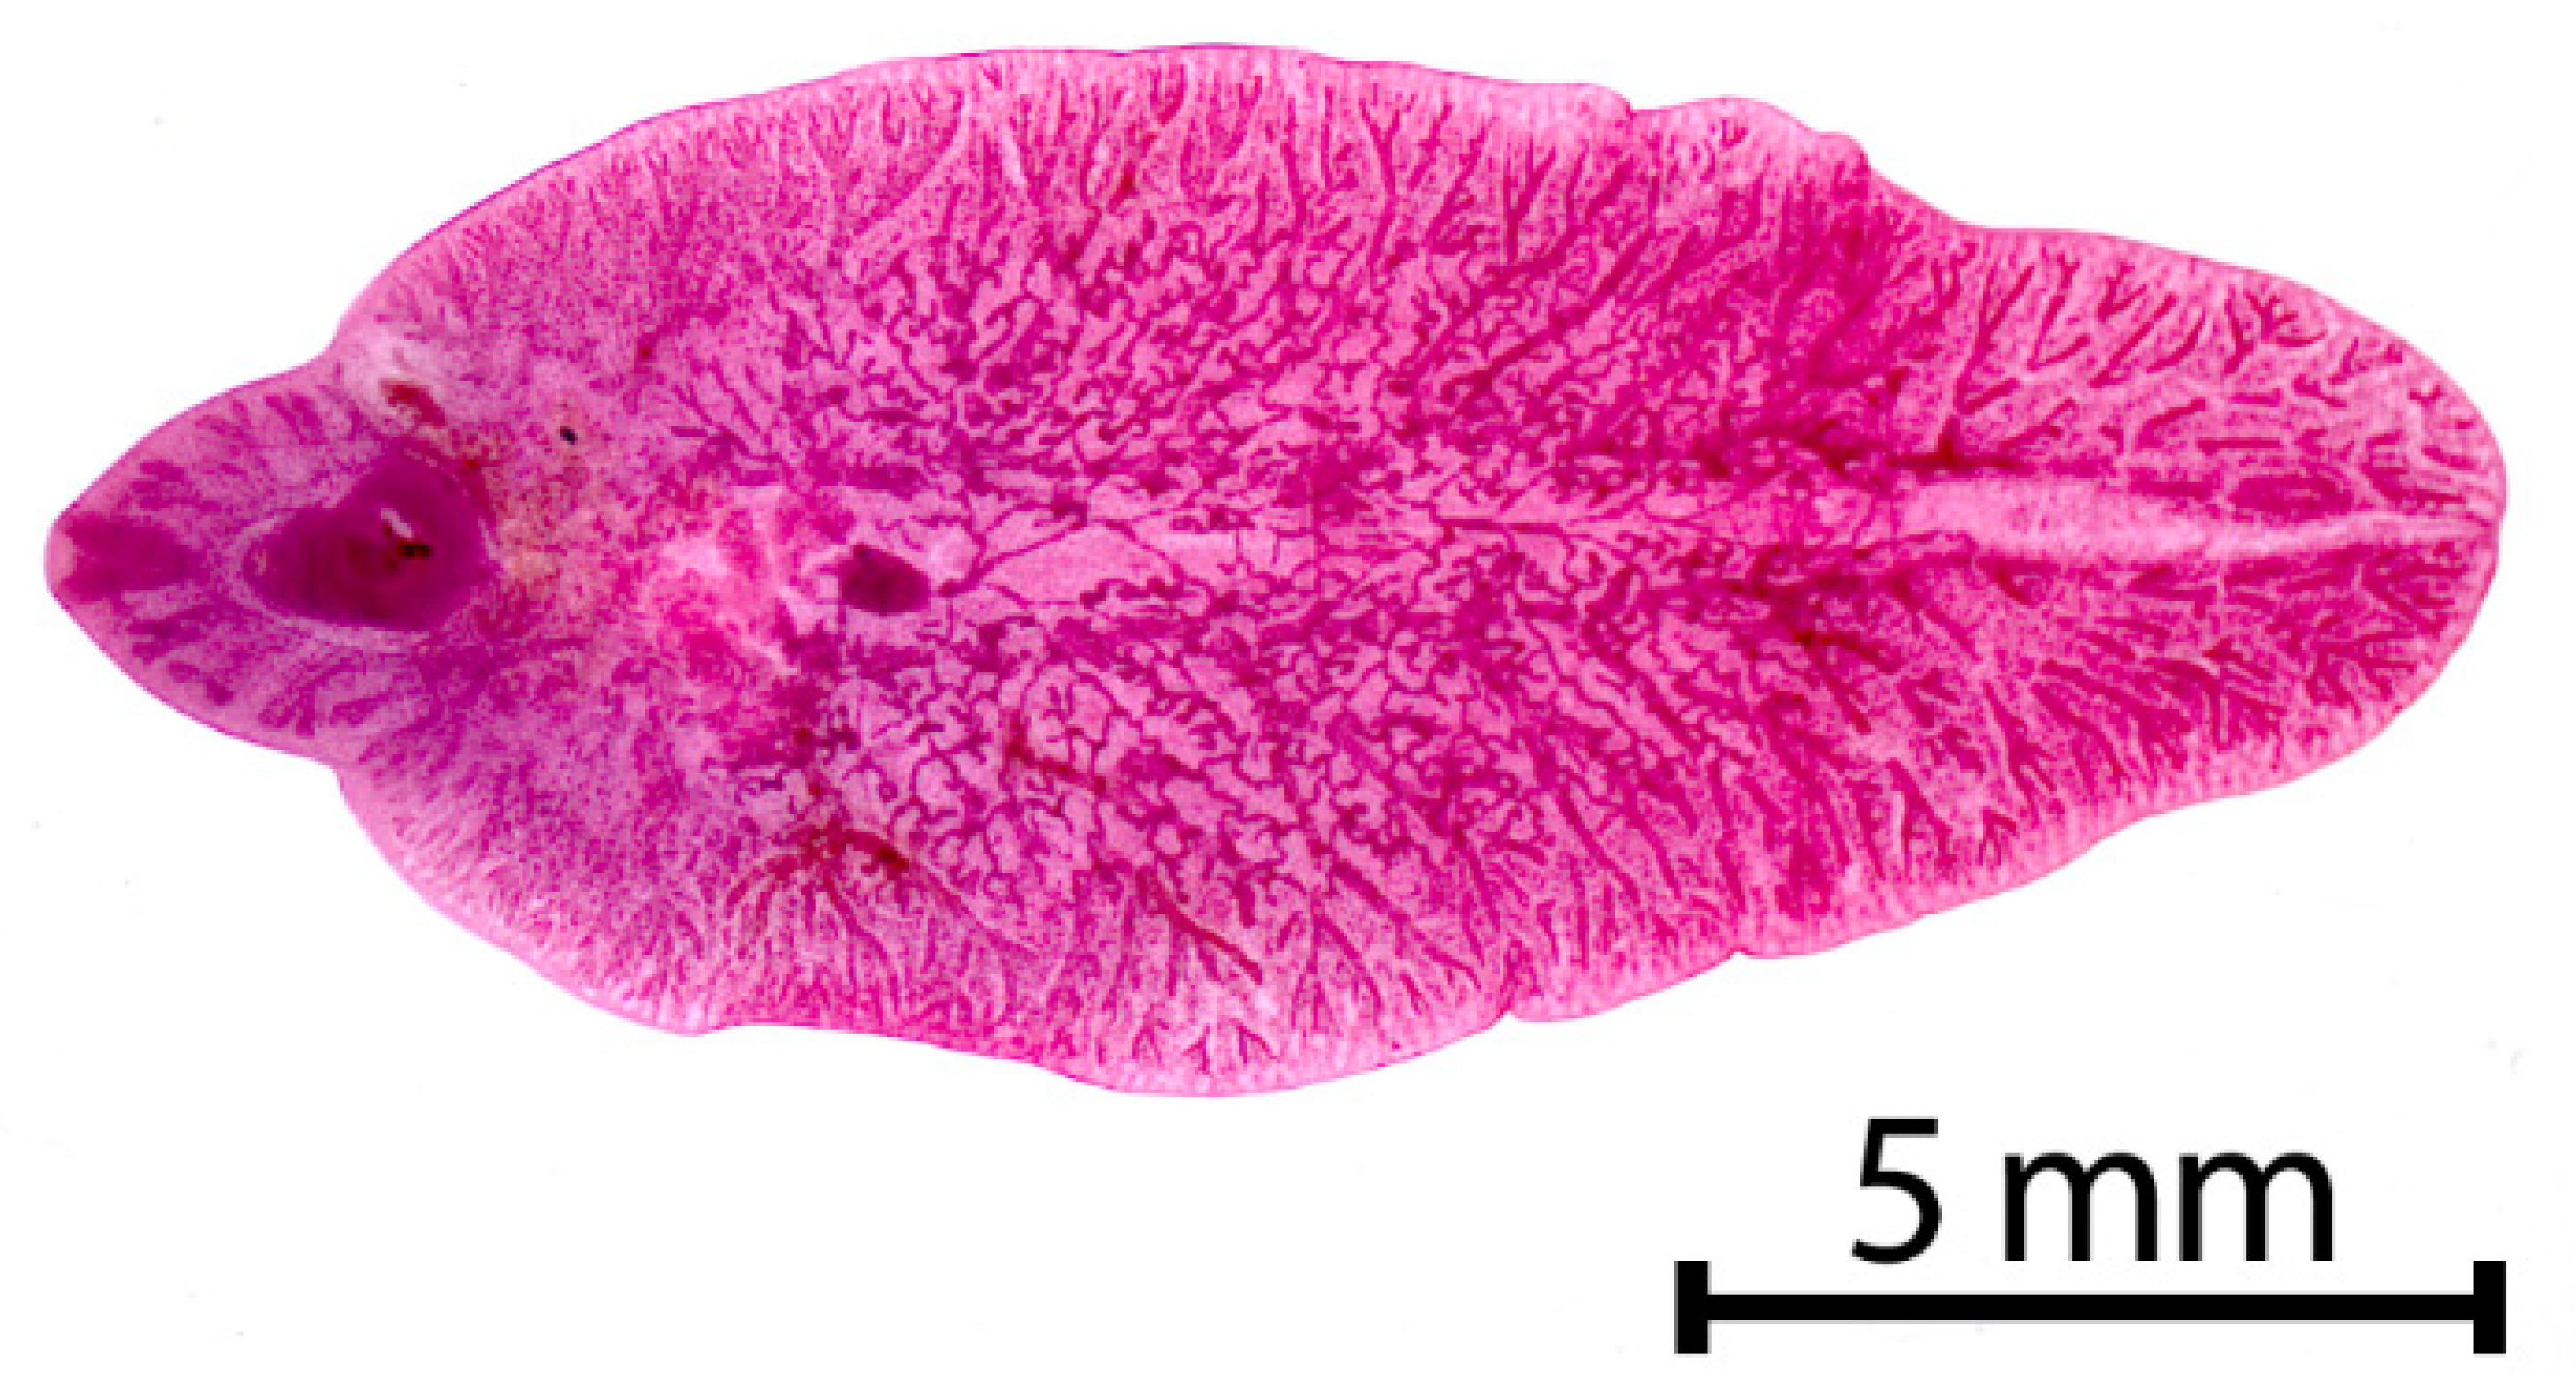 fascioliasis dicroceliosis)